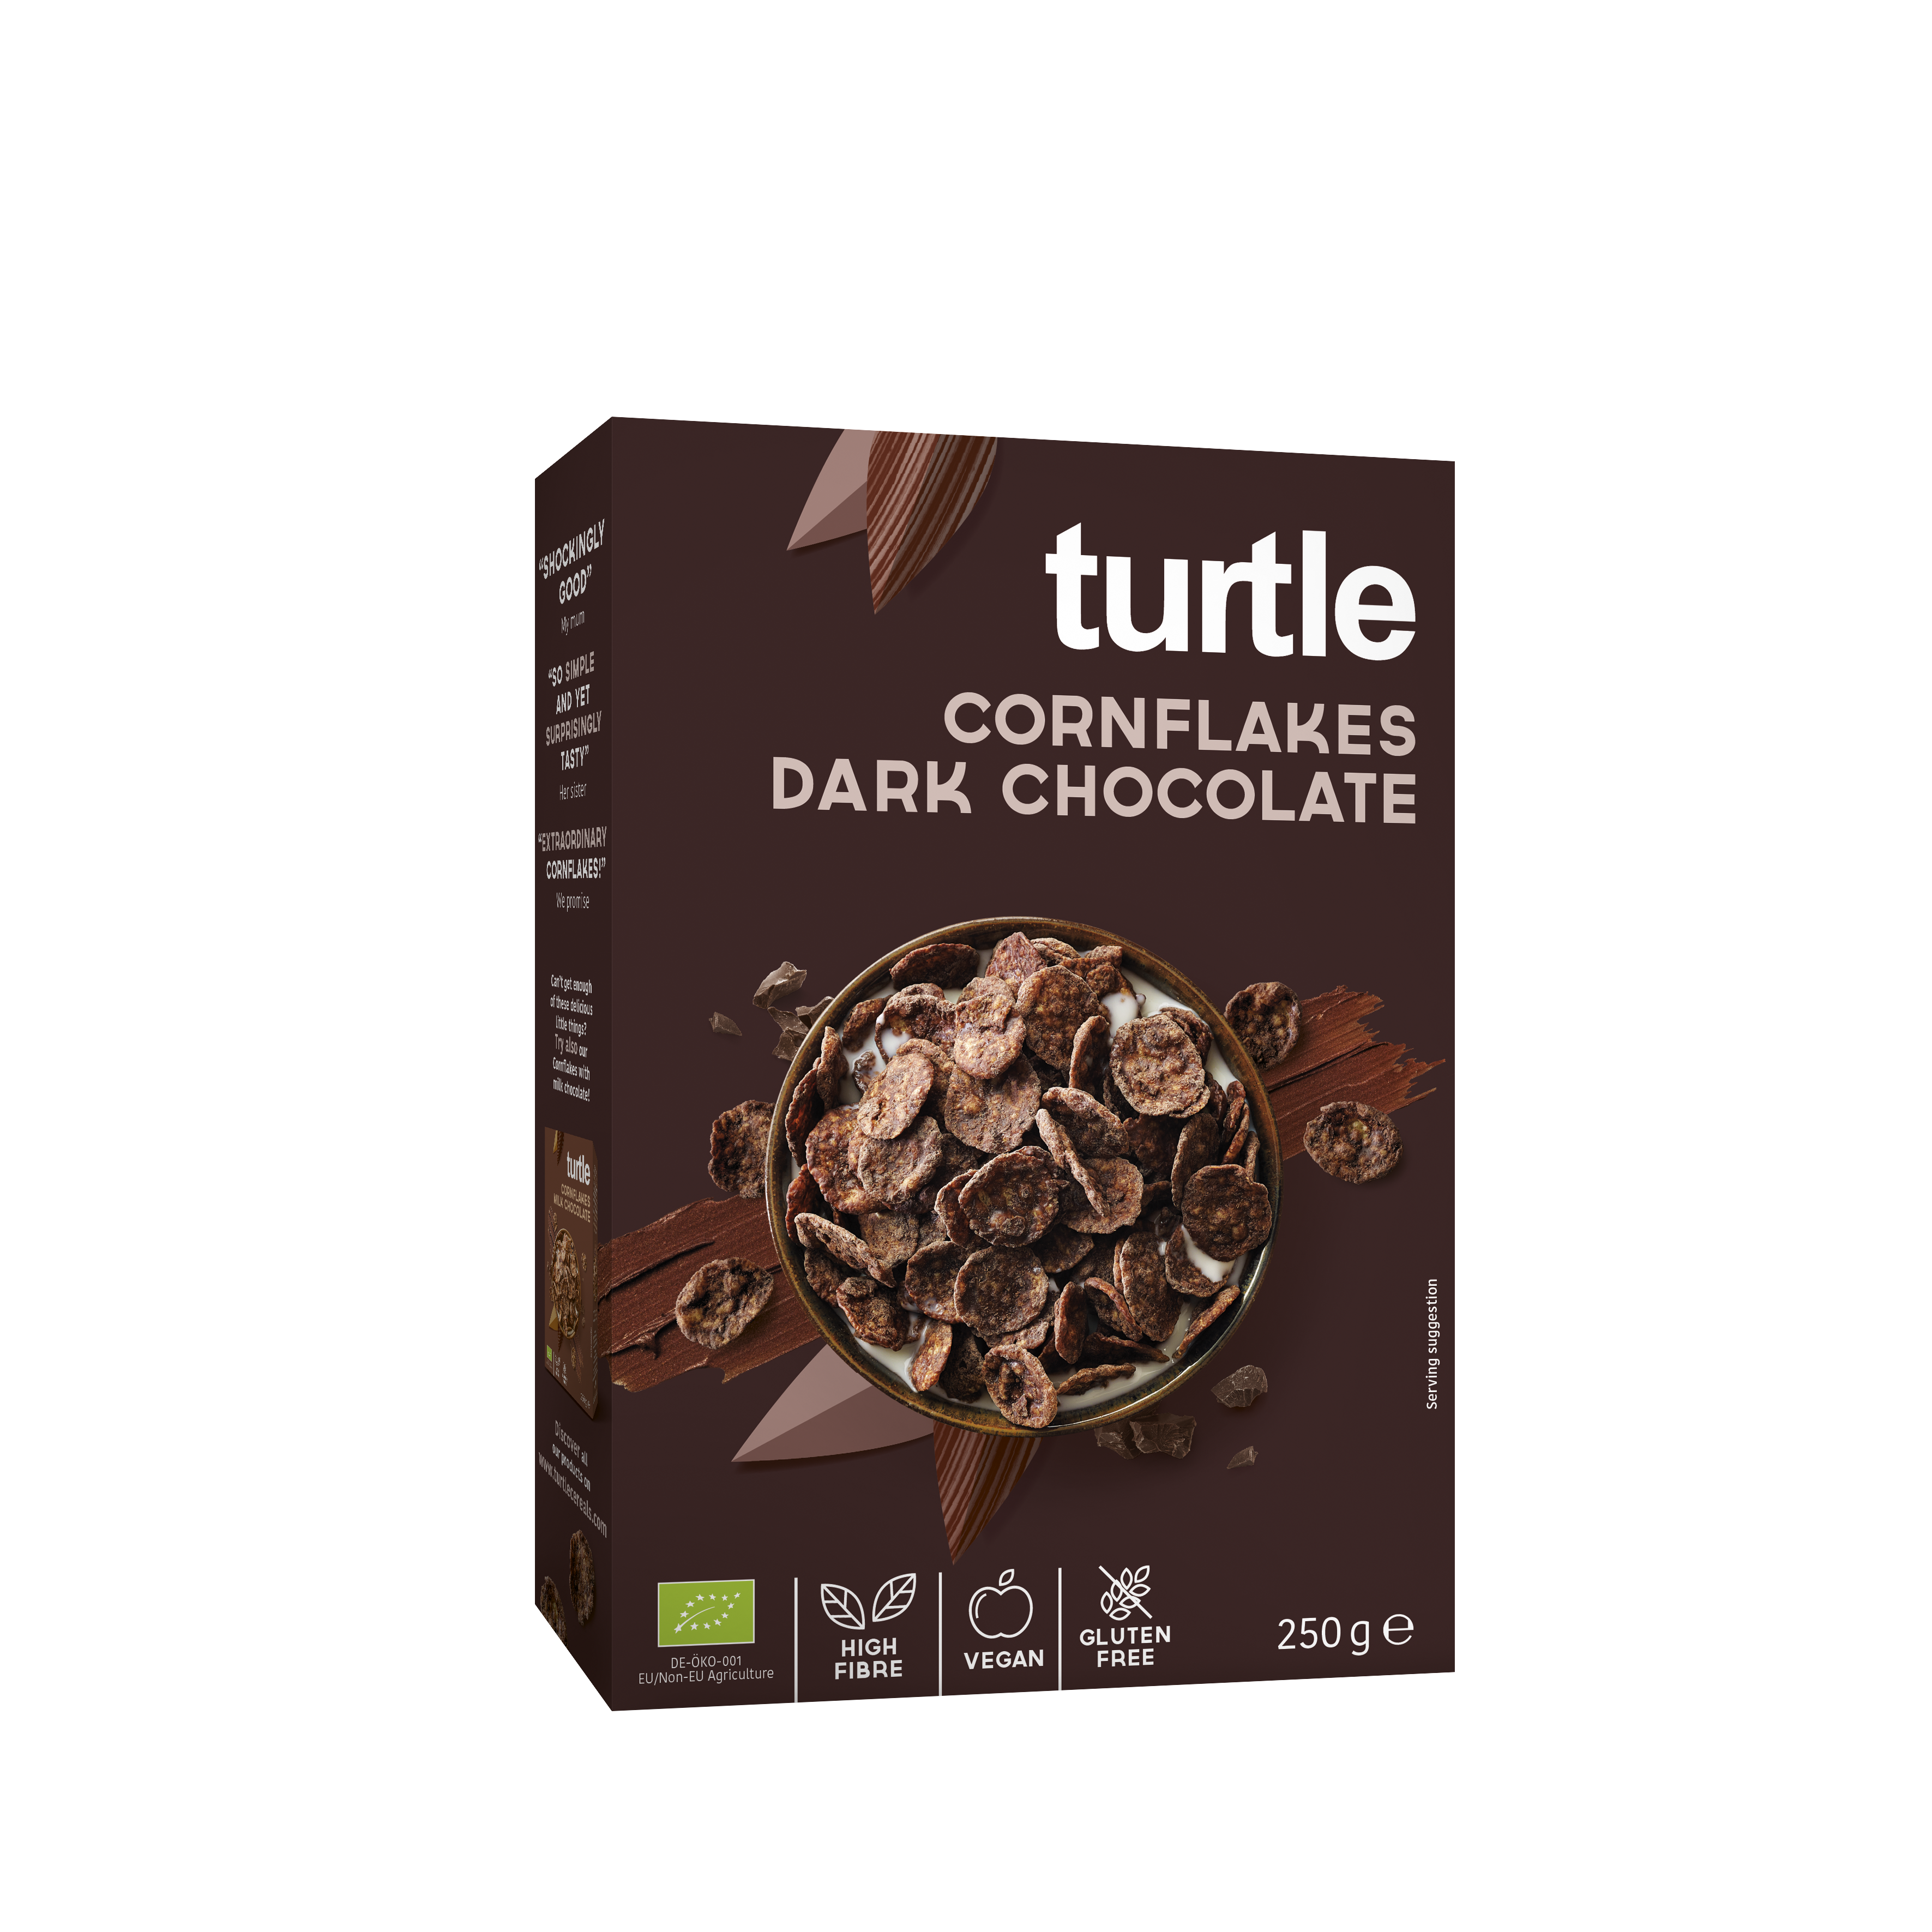 Dark Chocolate Cornflakes - Organic and Gluten-Free